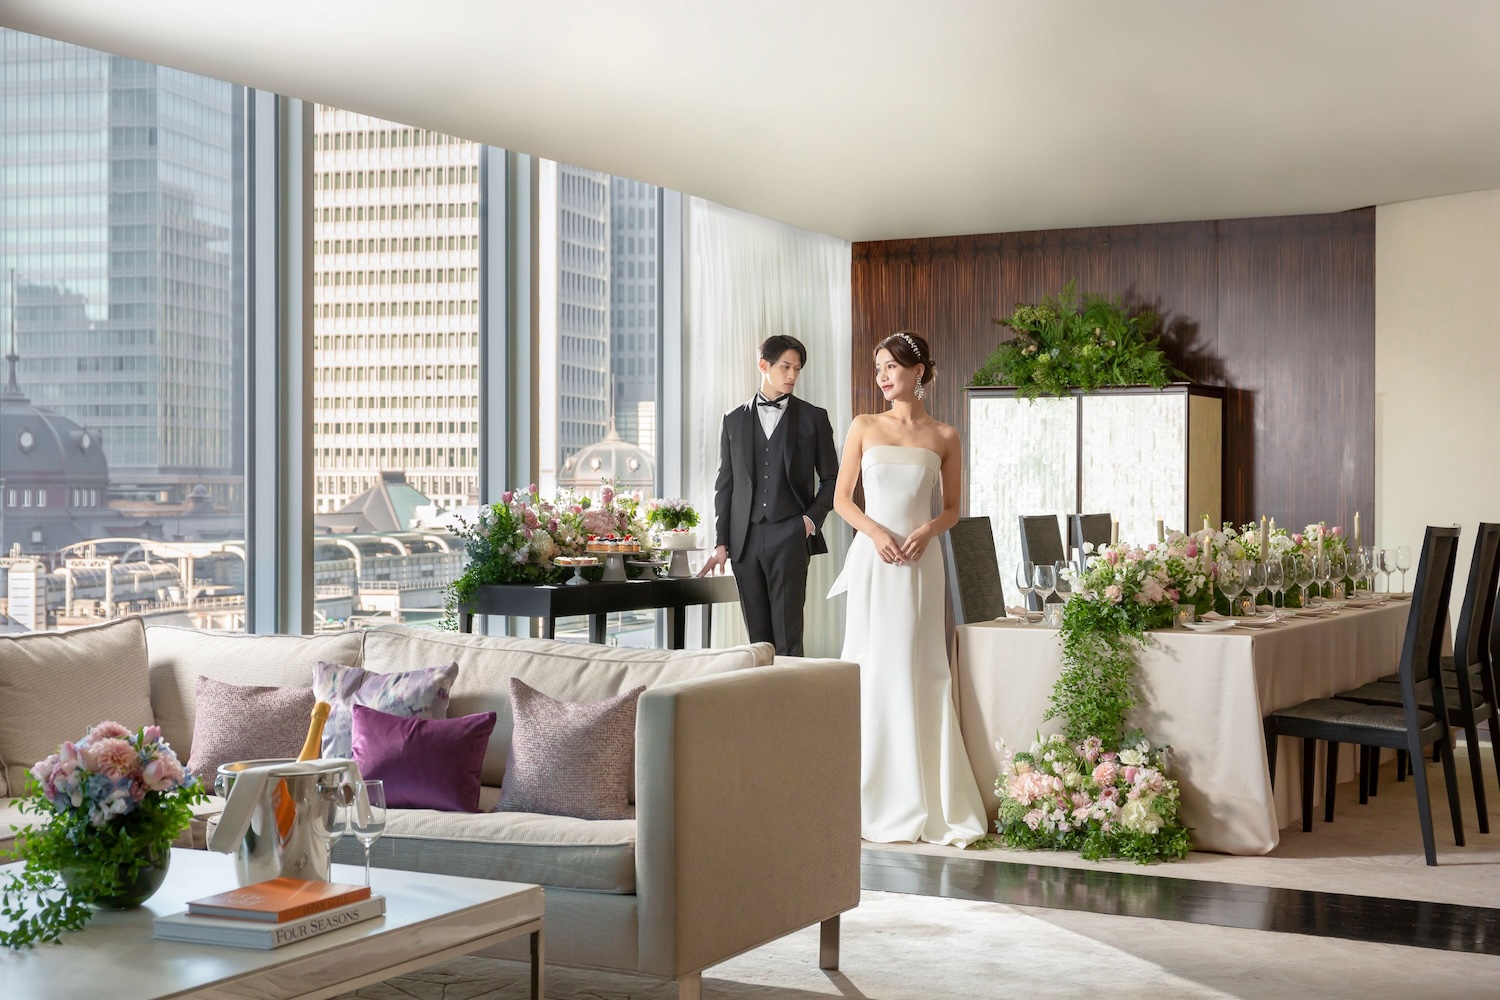 フォーシーズンズホテル丸の内 東京の新ウェディングプラン「SWEET "SUITE" WEDDING」